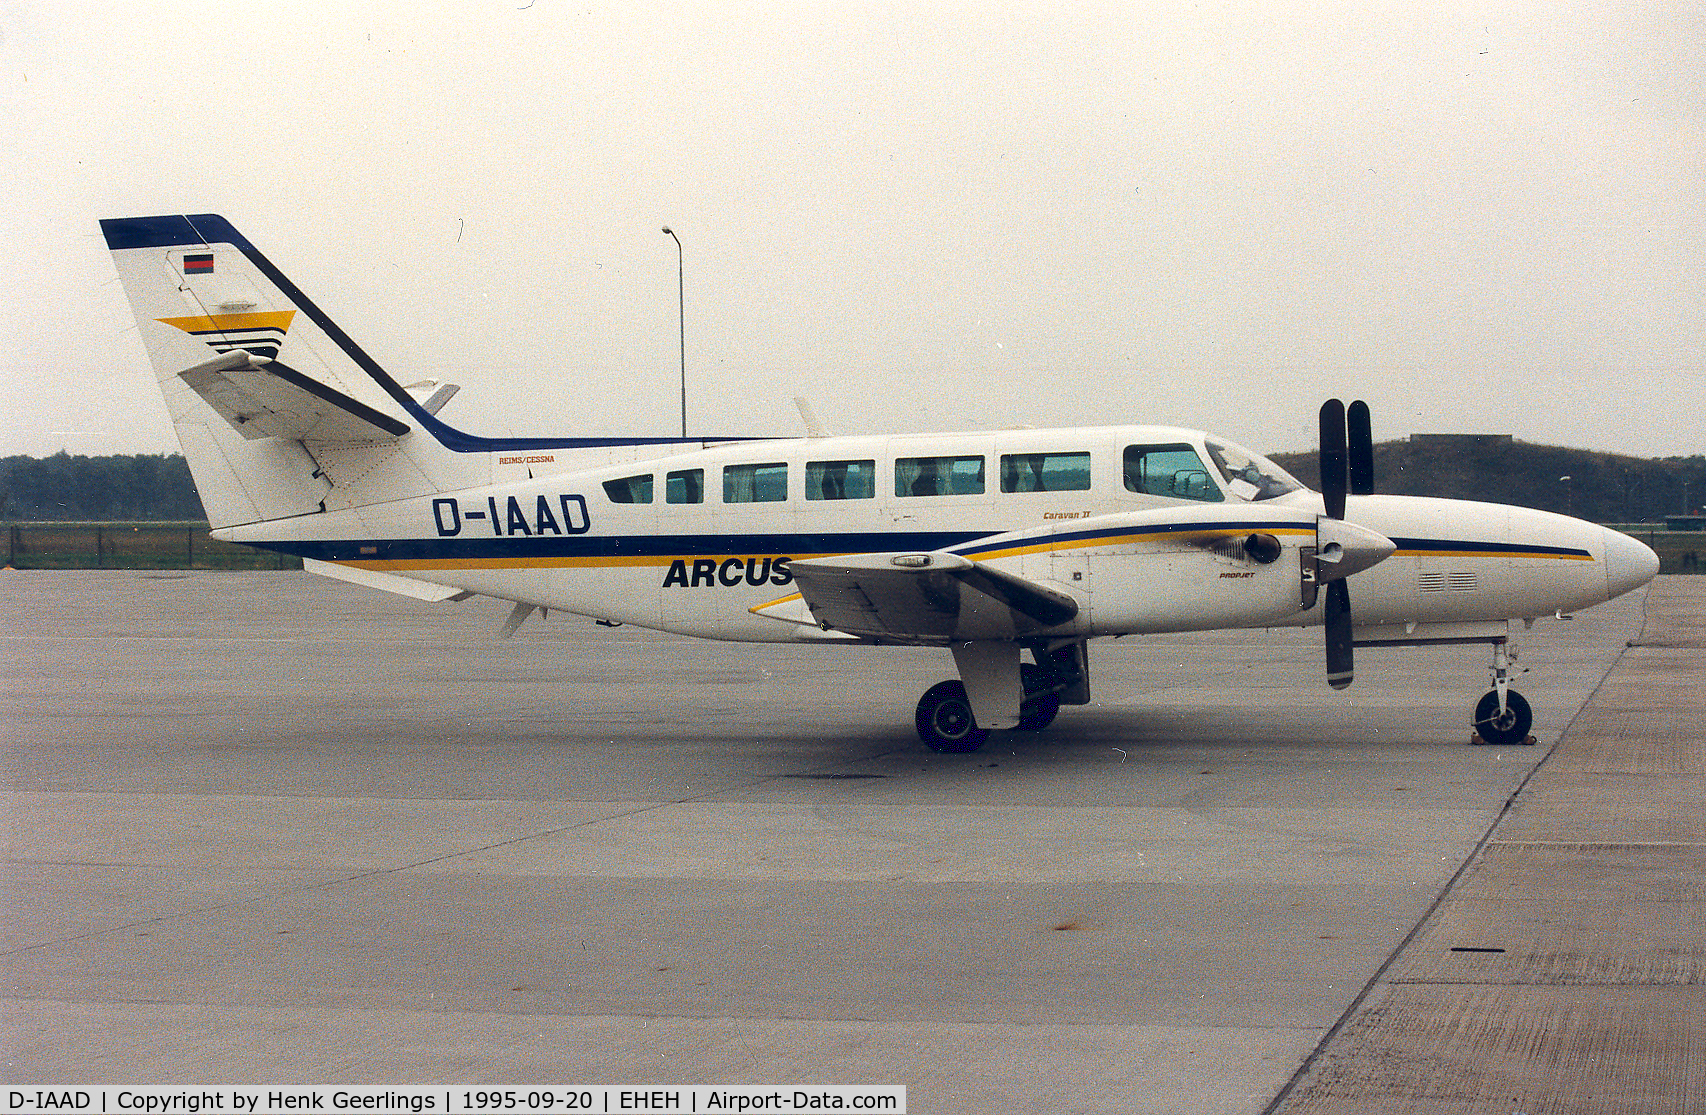 D-IAAD, 1990 Reims F406 Caravan II C/N F406-0047, Arcus Air